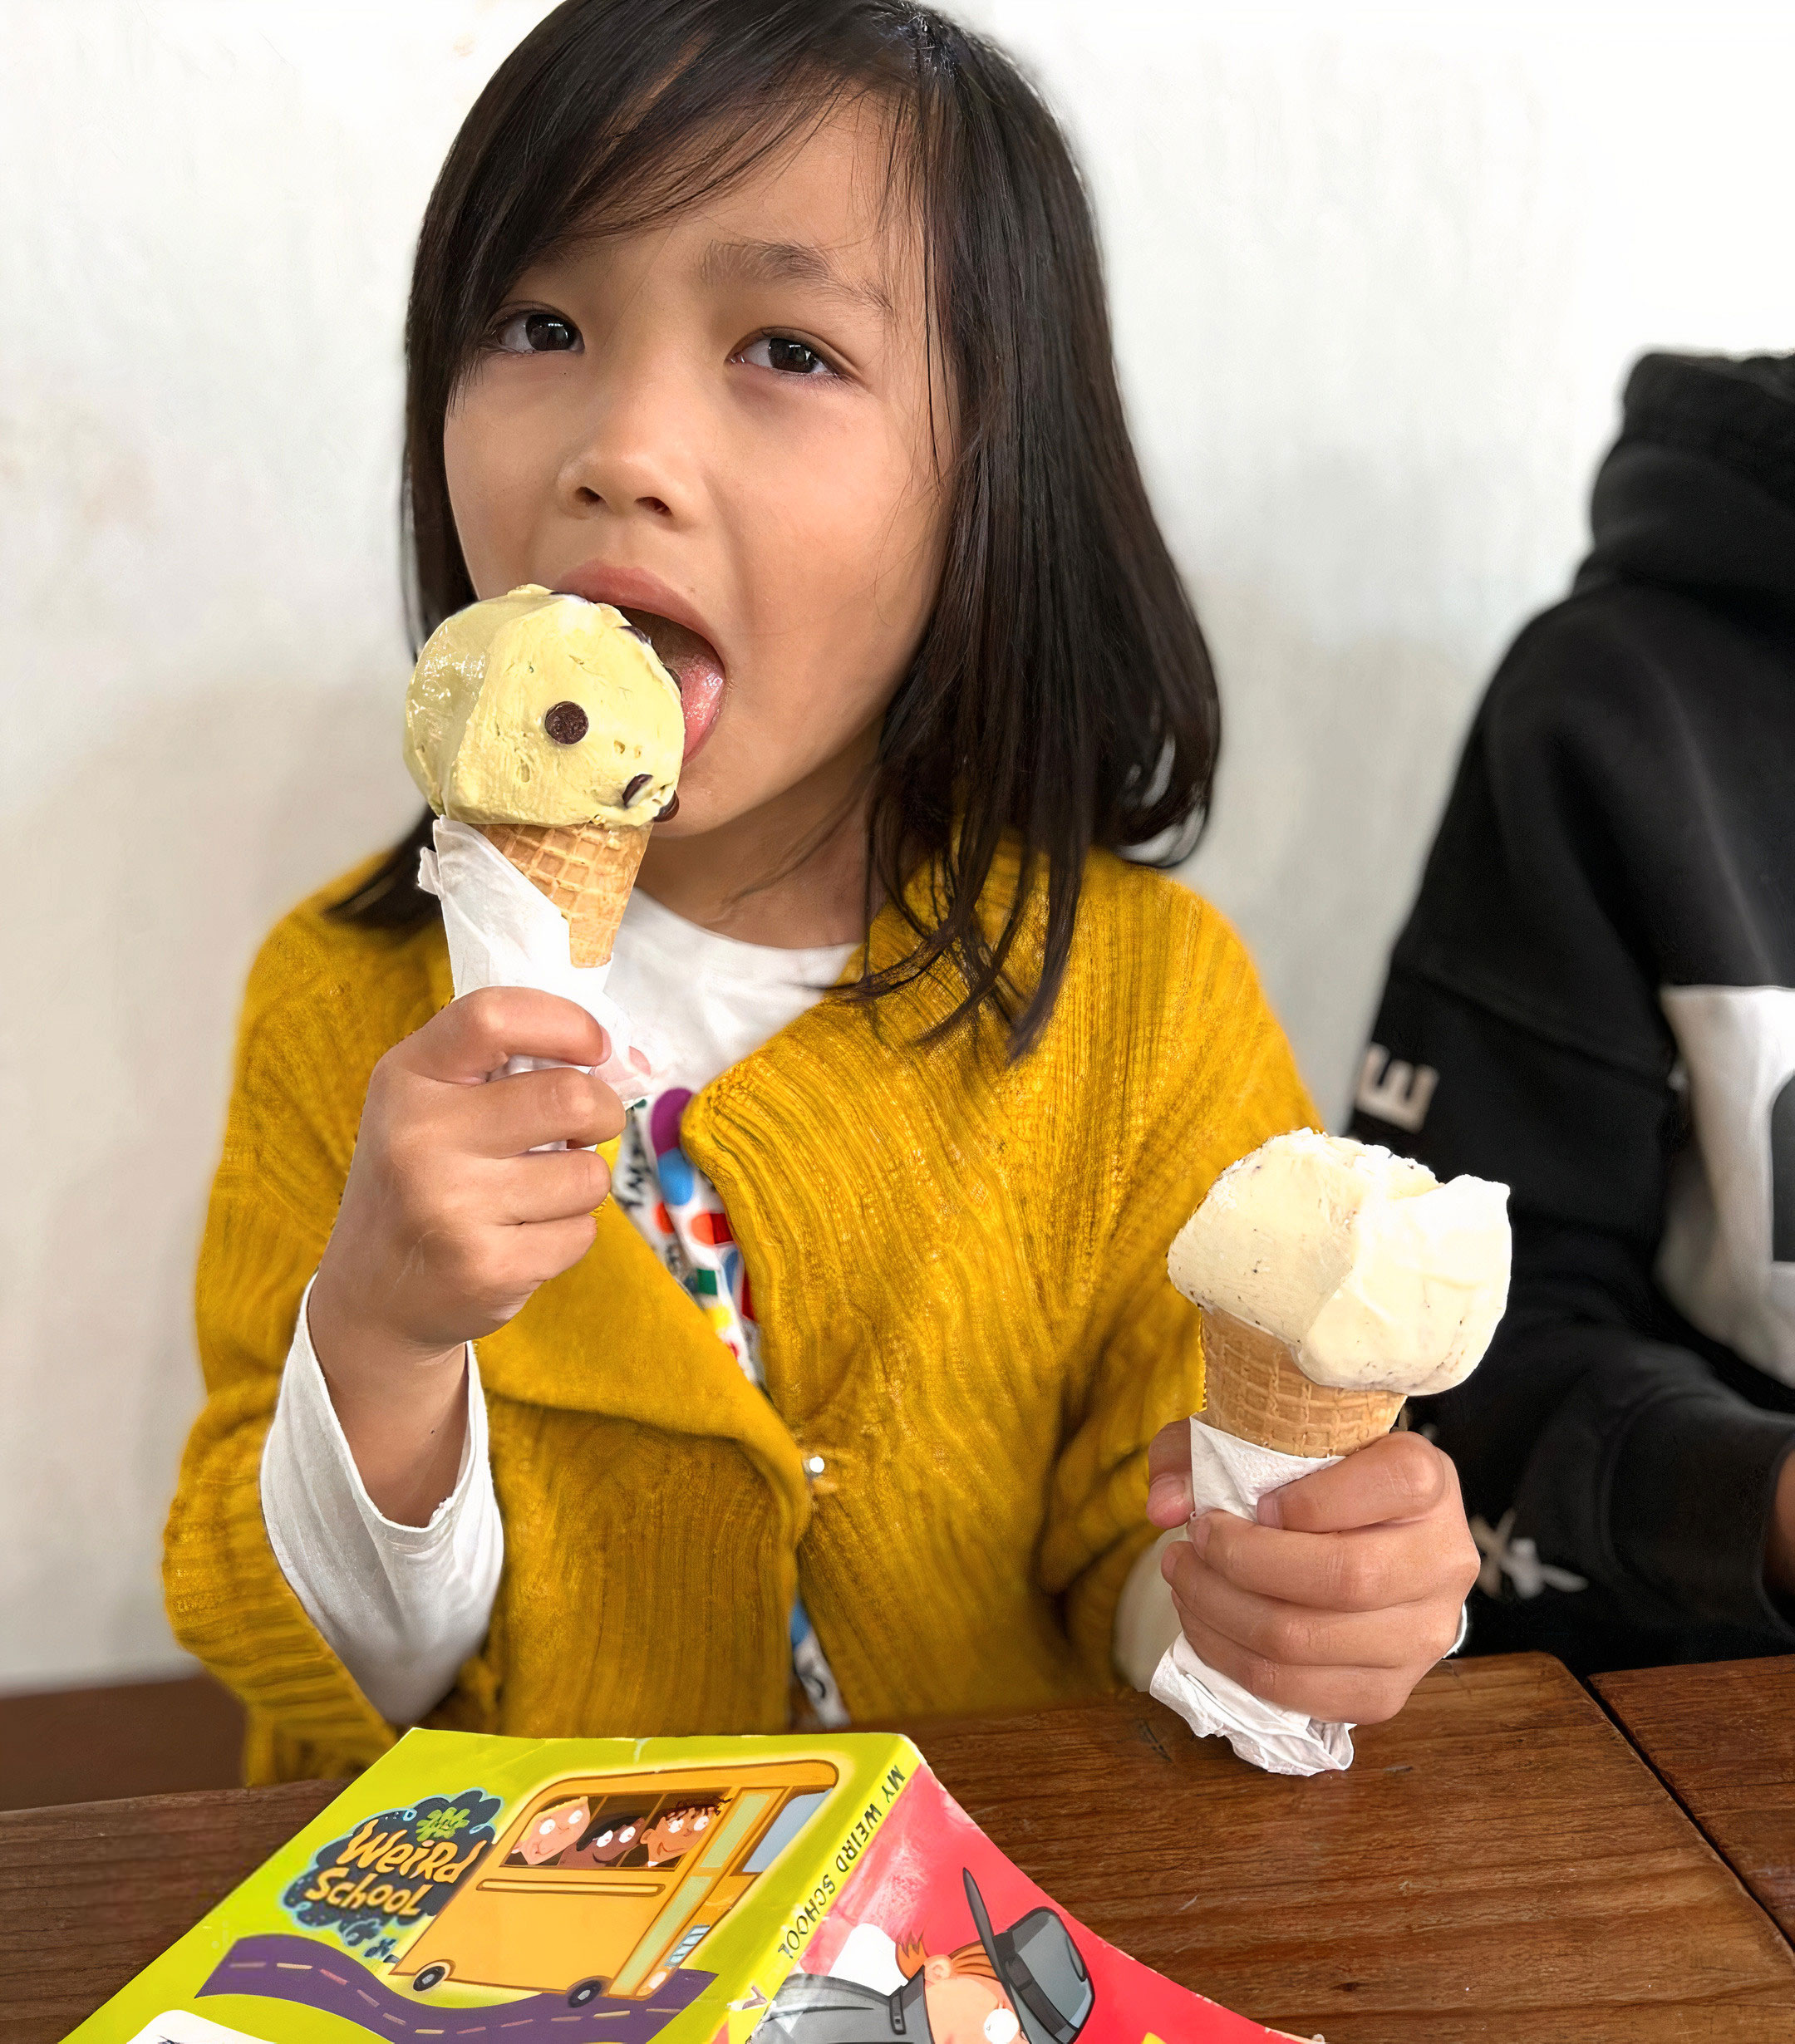 kid enjoying Nature's Organic ice cream